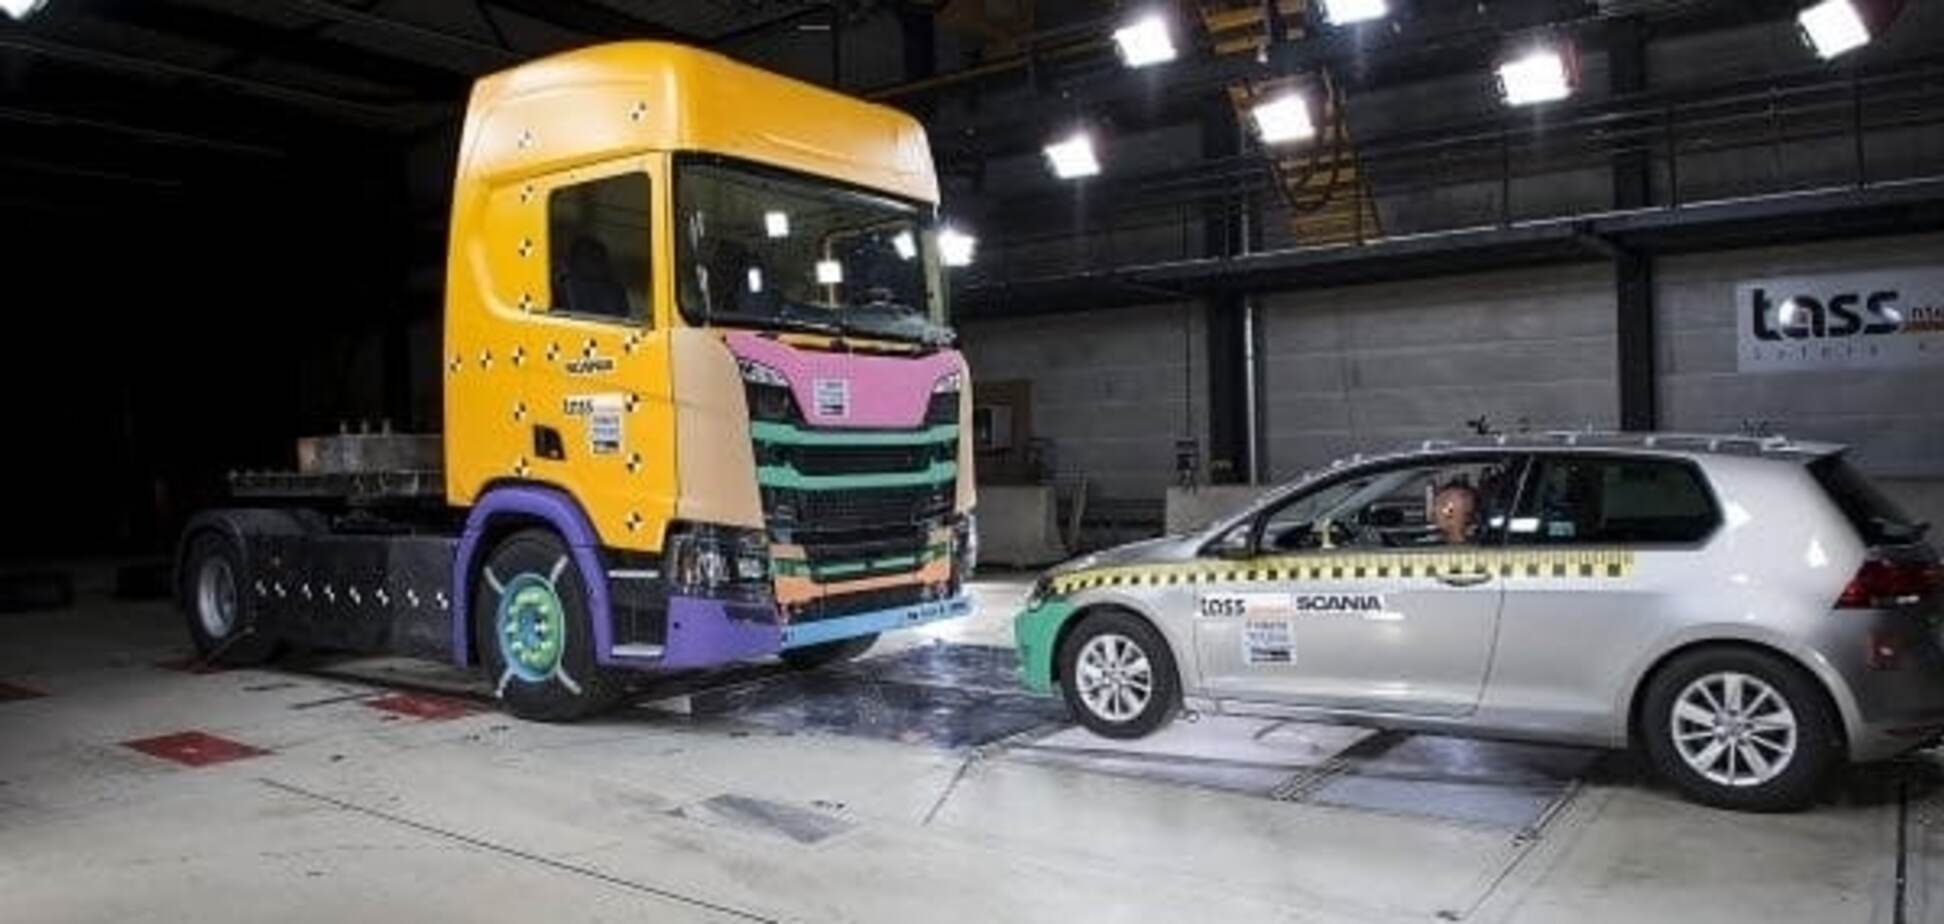 Scania испытывала новые грузовики невероятными краш-тестами в течение пяти лет: видео